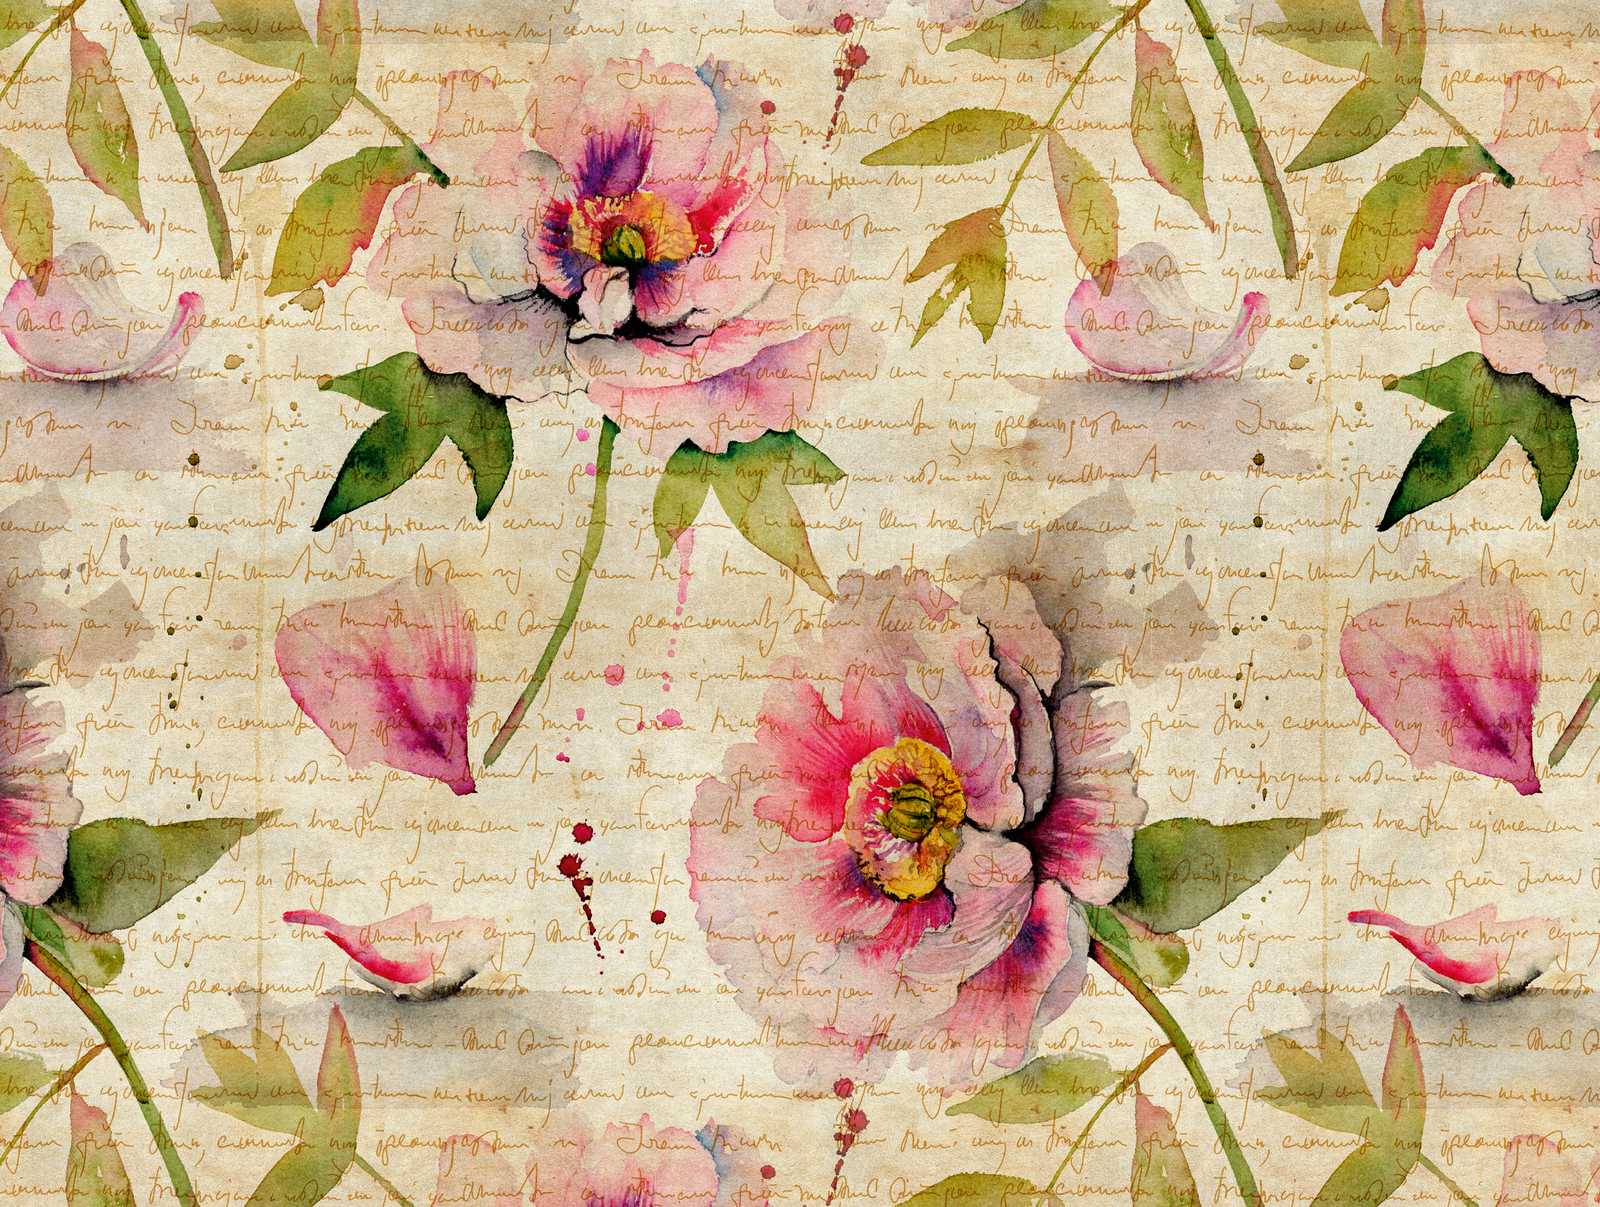             Papel pintado novedad - papel pintado motivo rosas estilo vintage & cottage core
        